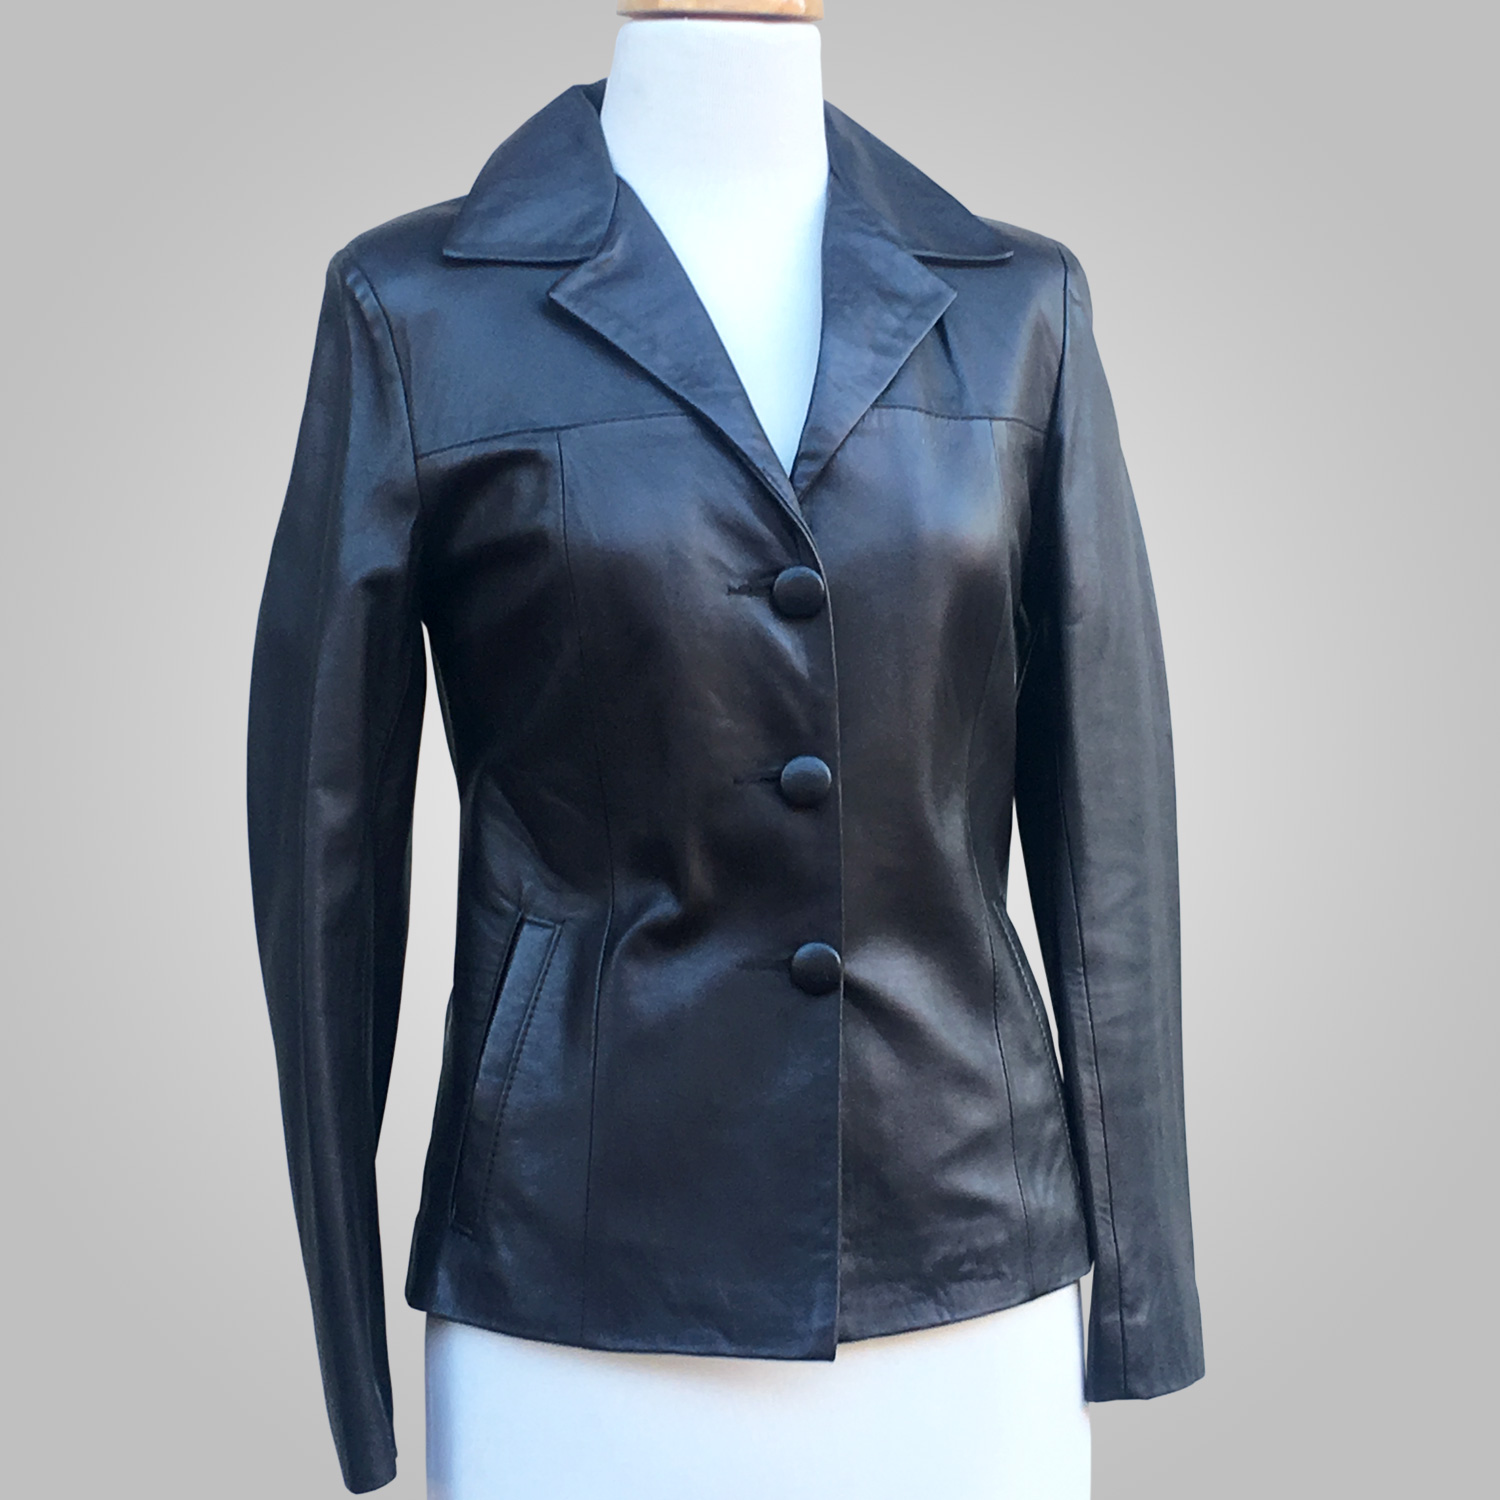 Dark blue Leather Jacket - Dark blue Emelia 026 - L'Aurore Leather Jacket